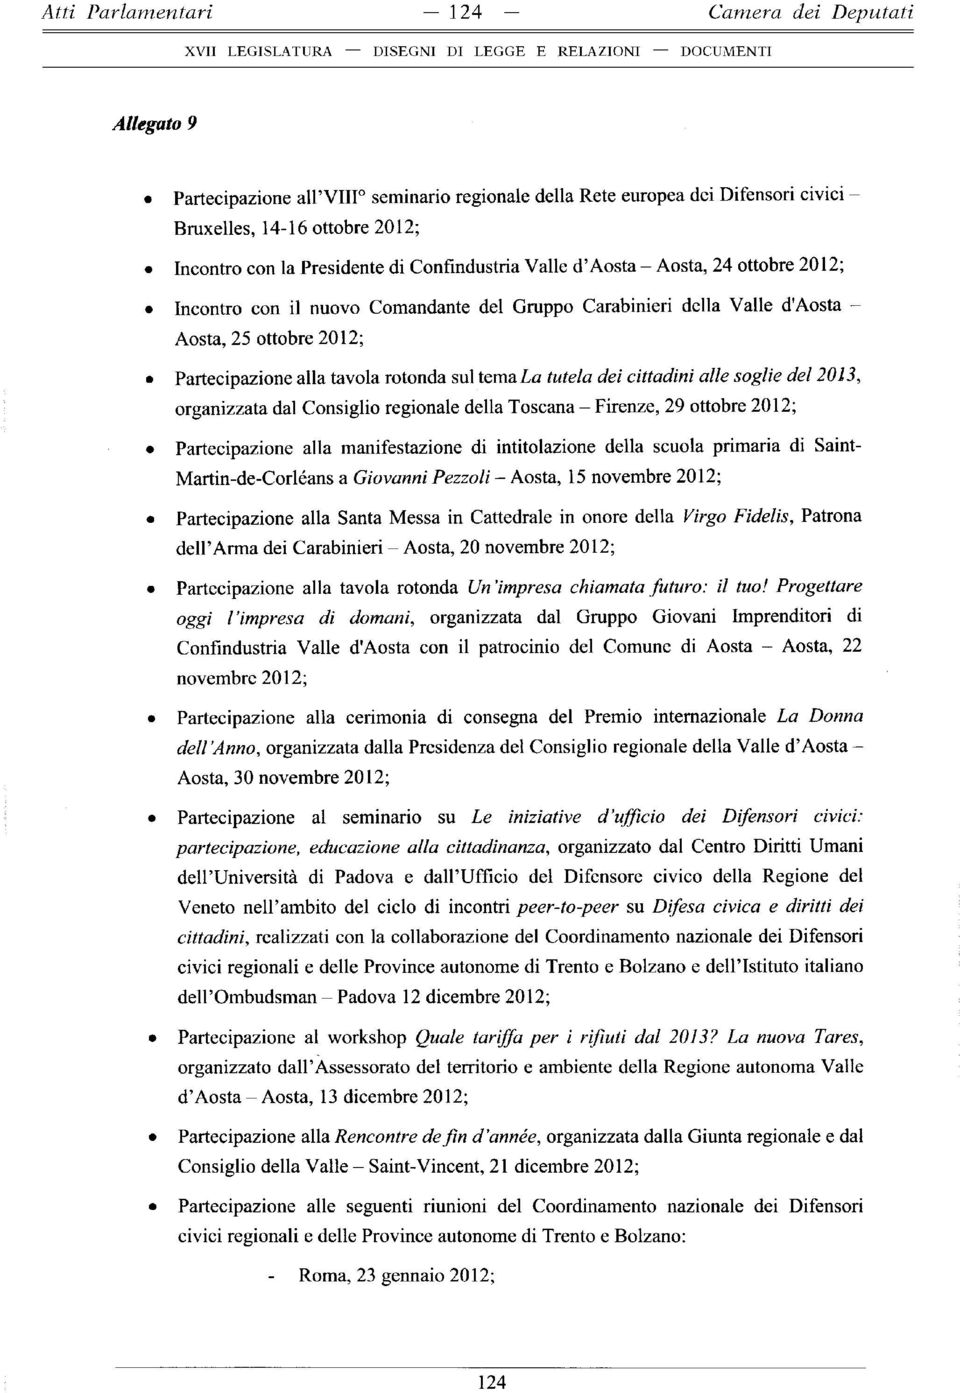 rotonda sul tema La tutela dei cittadini alle soglie del 2013, organizzata dal Consiglio regionale della Toscana - Firenze, 29 ottobre 2012; Partecipazione alla manifestazione di intitolazione della